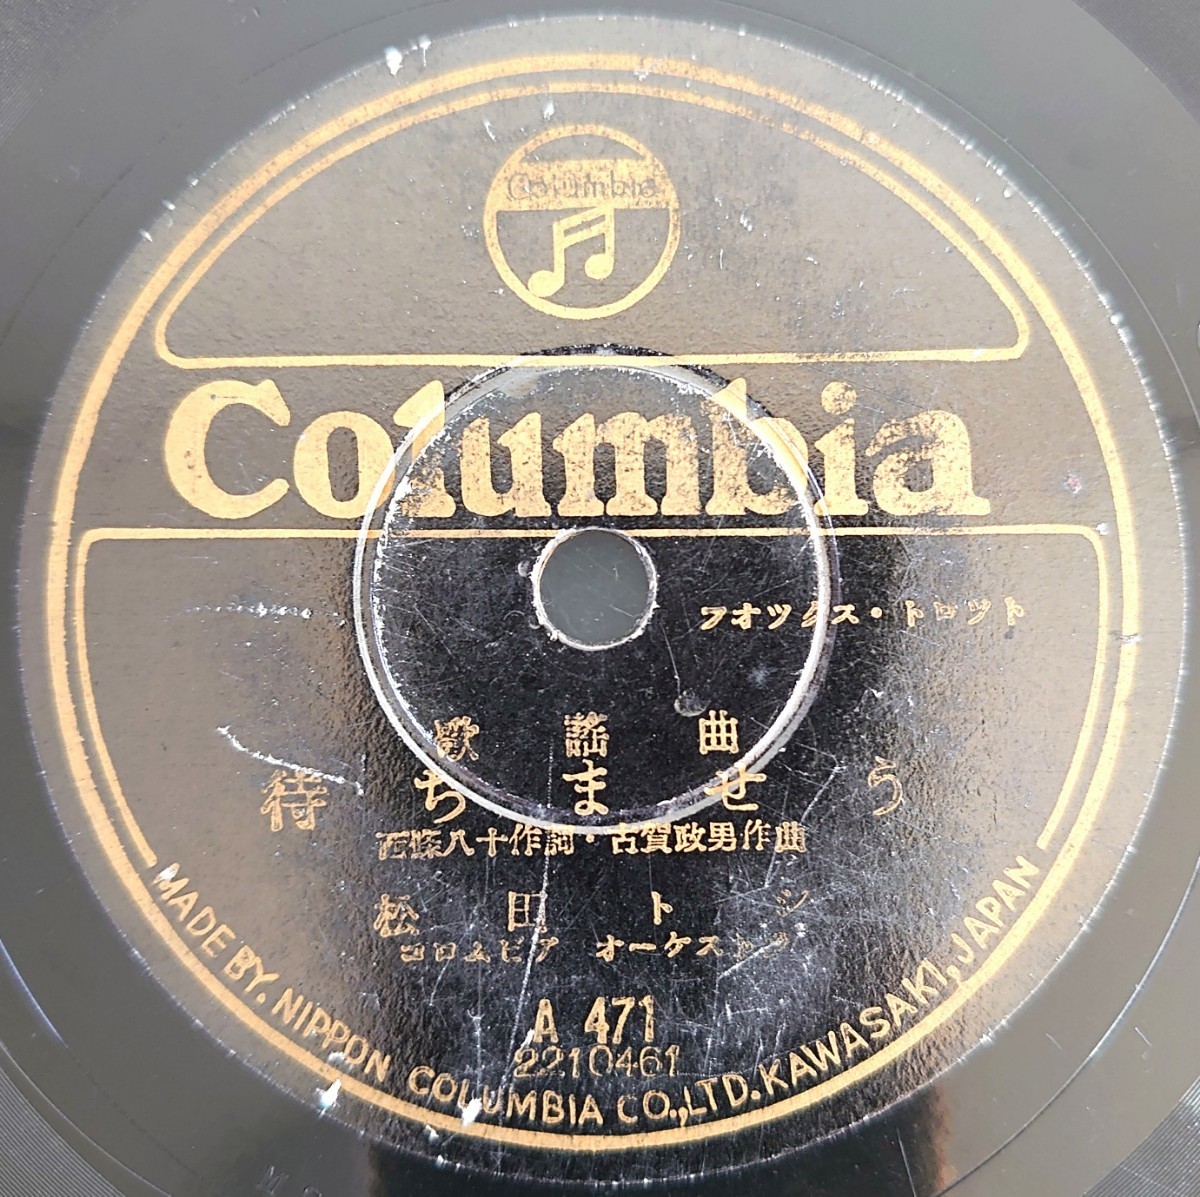 【SP盤レコード】Columbia歌謡曲/シベリヤ・エレジー 伊藤久男/待ちませう 松田トシ/SPレコード_画像5